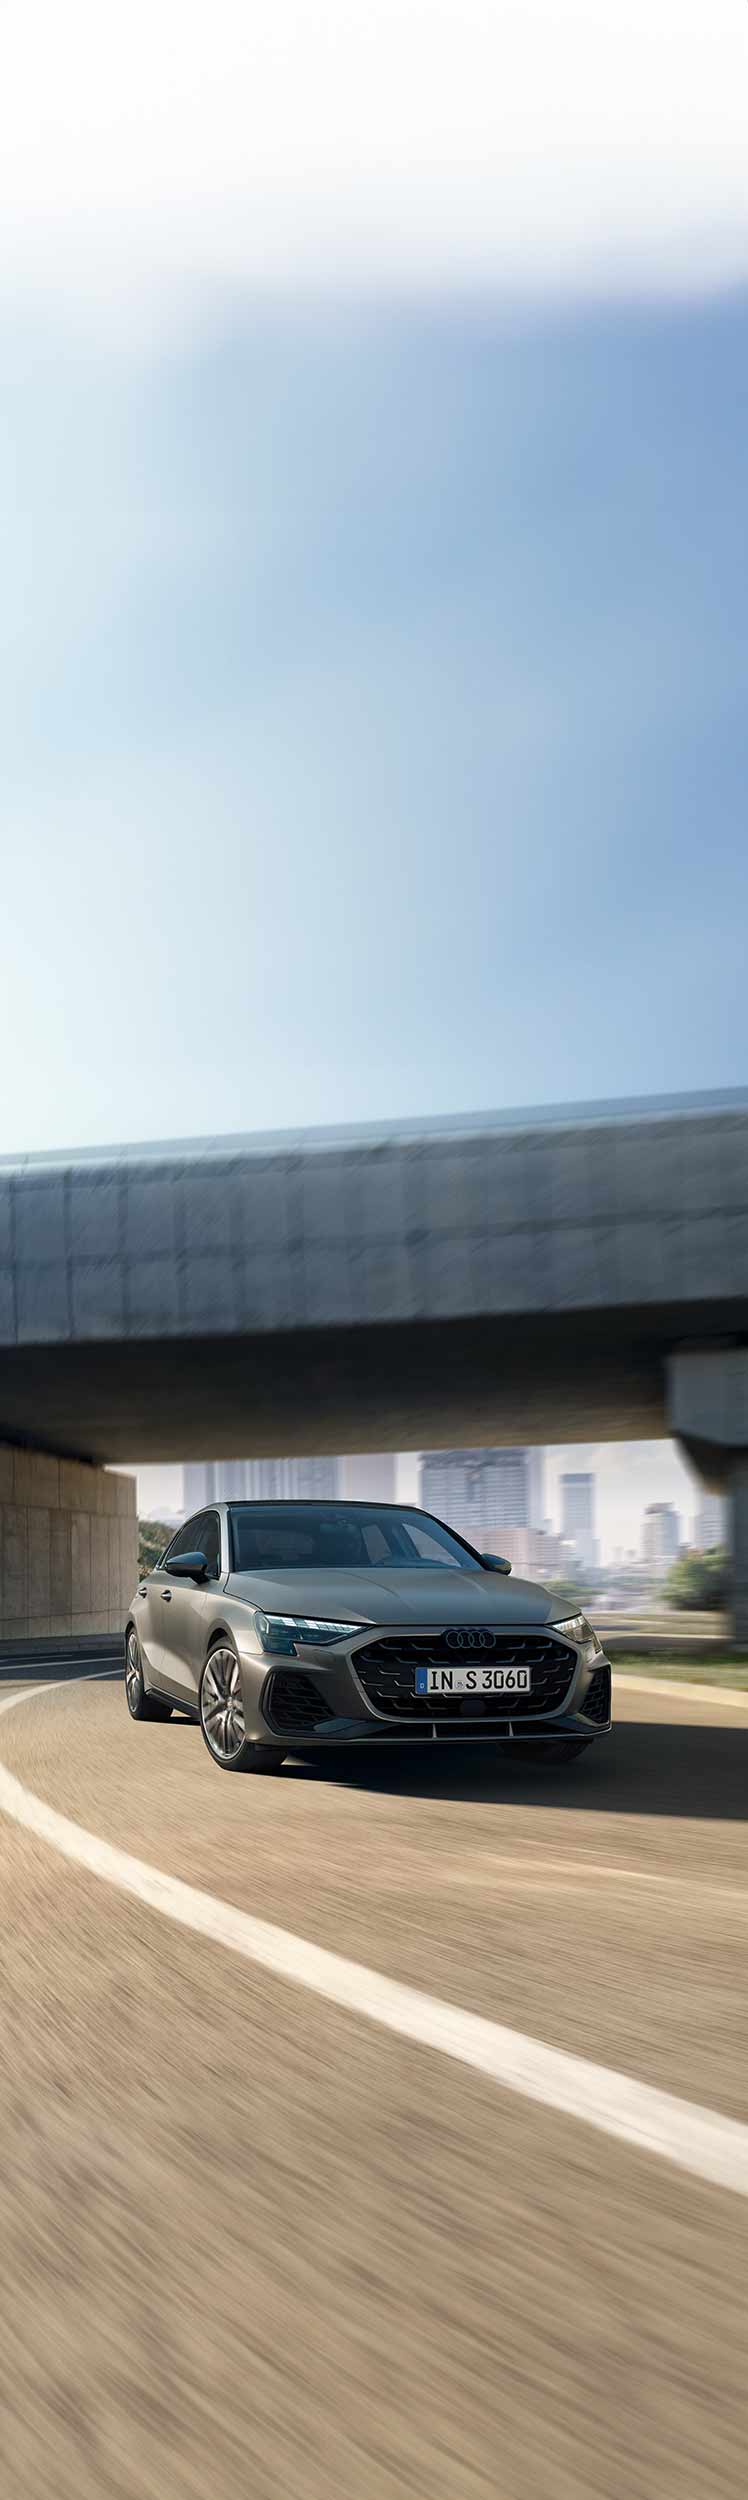 Dinamični prikaz sprednjega dela vozila Audi S3 Sportback